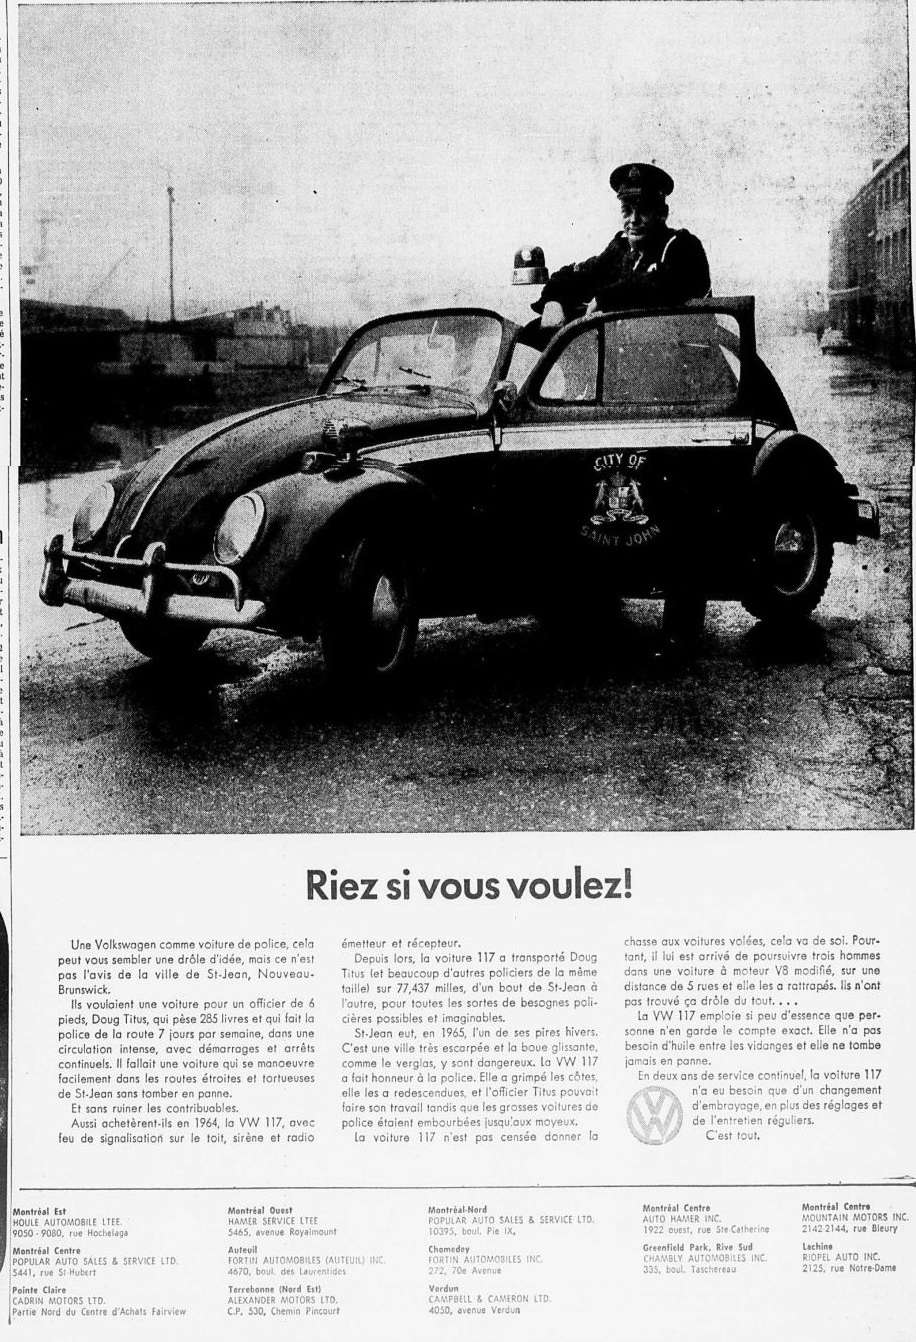 Vieilles publicitées de produits importé publié au Québec - Page 2 1966_030